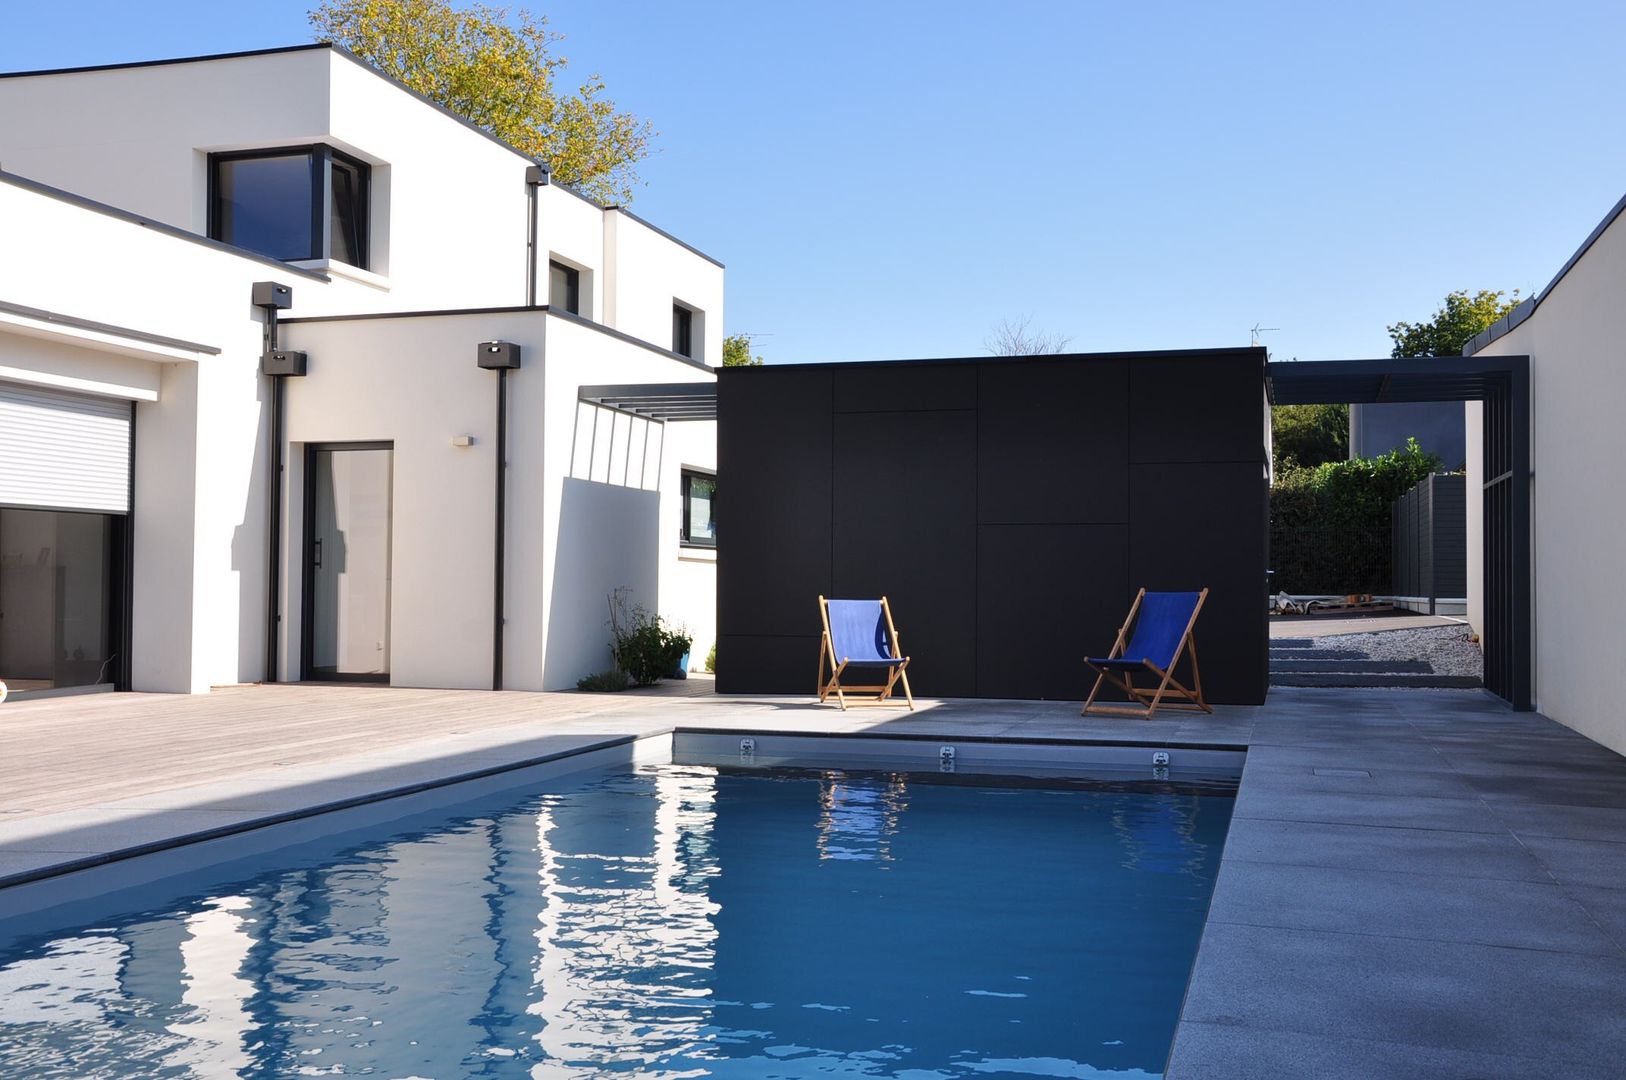 Des pool-house aussi !, Wellhome - Bebamboo Wellhome - Bebamboo Modern living